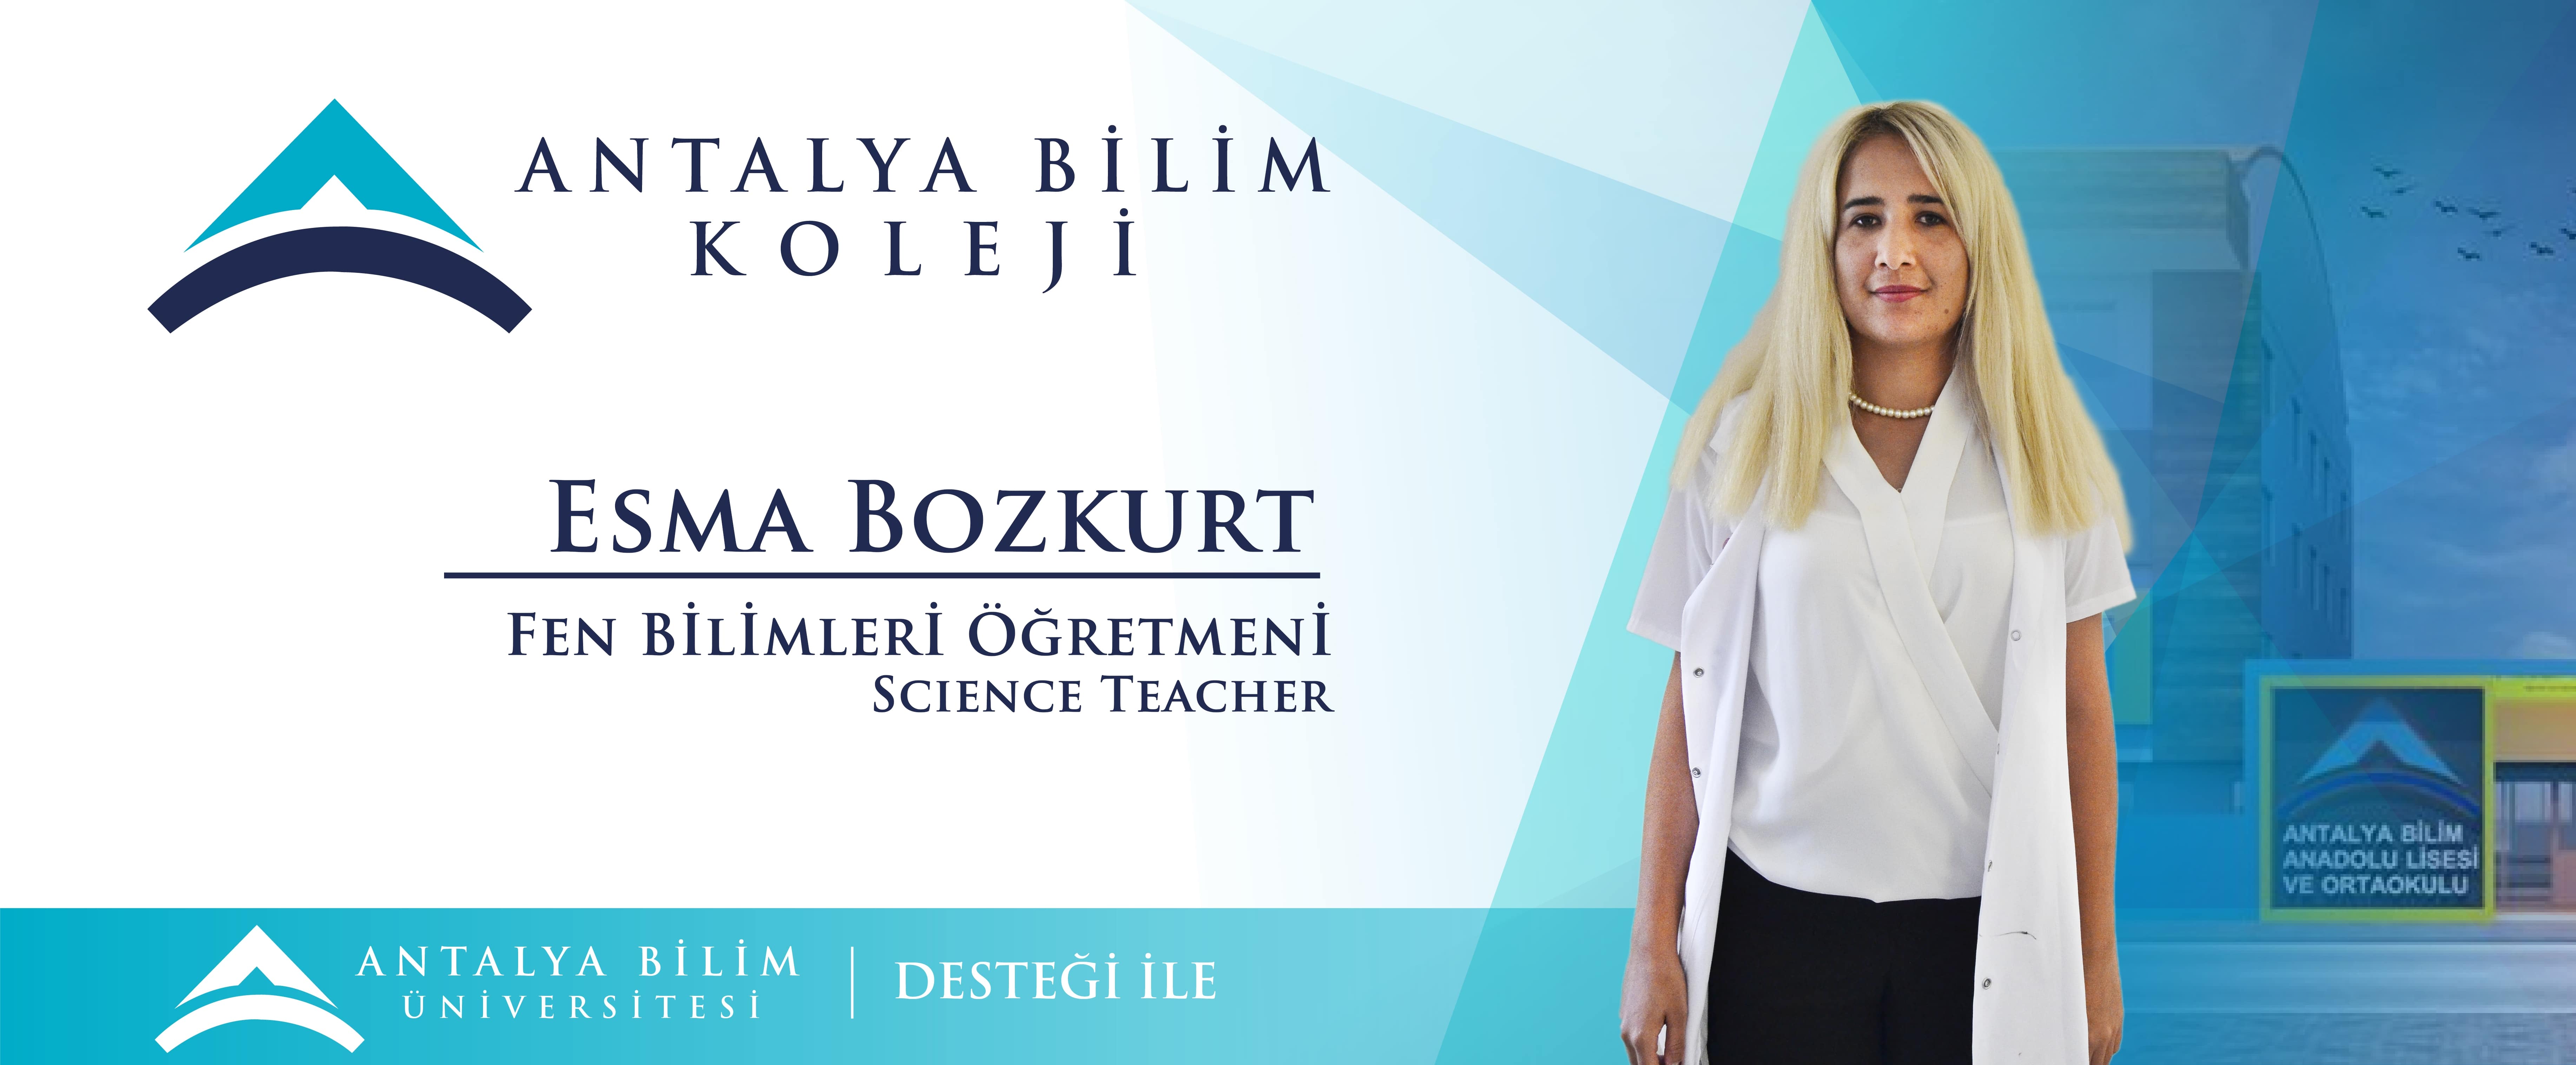 Esma Bozkurt